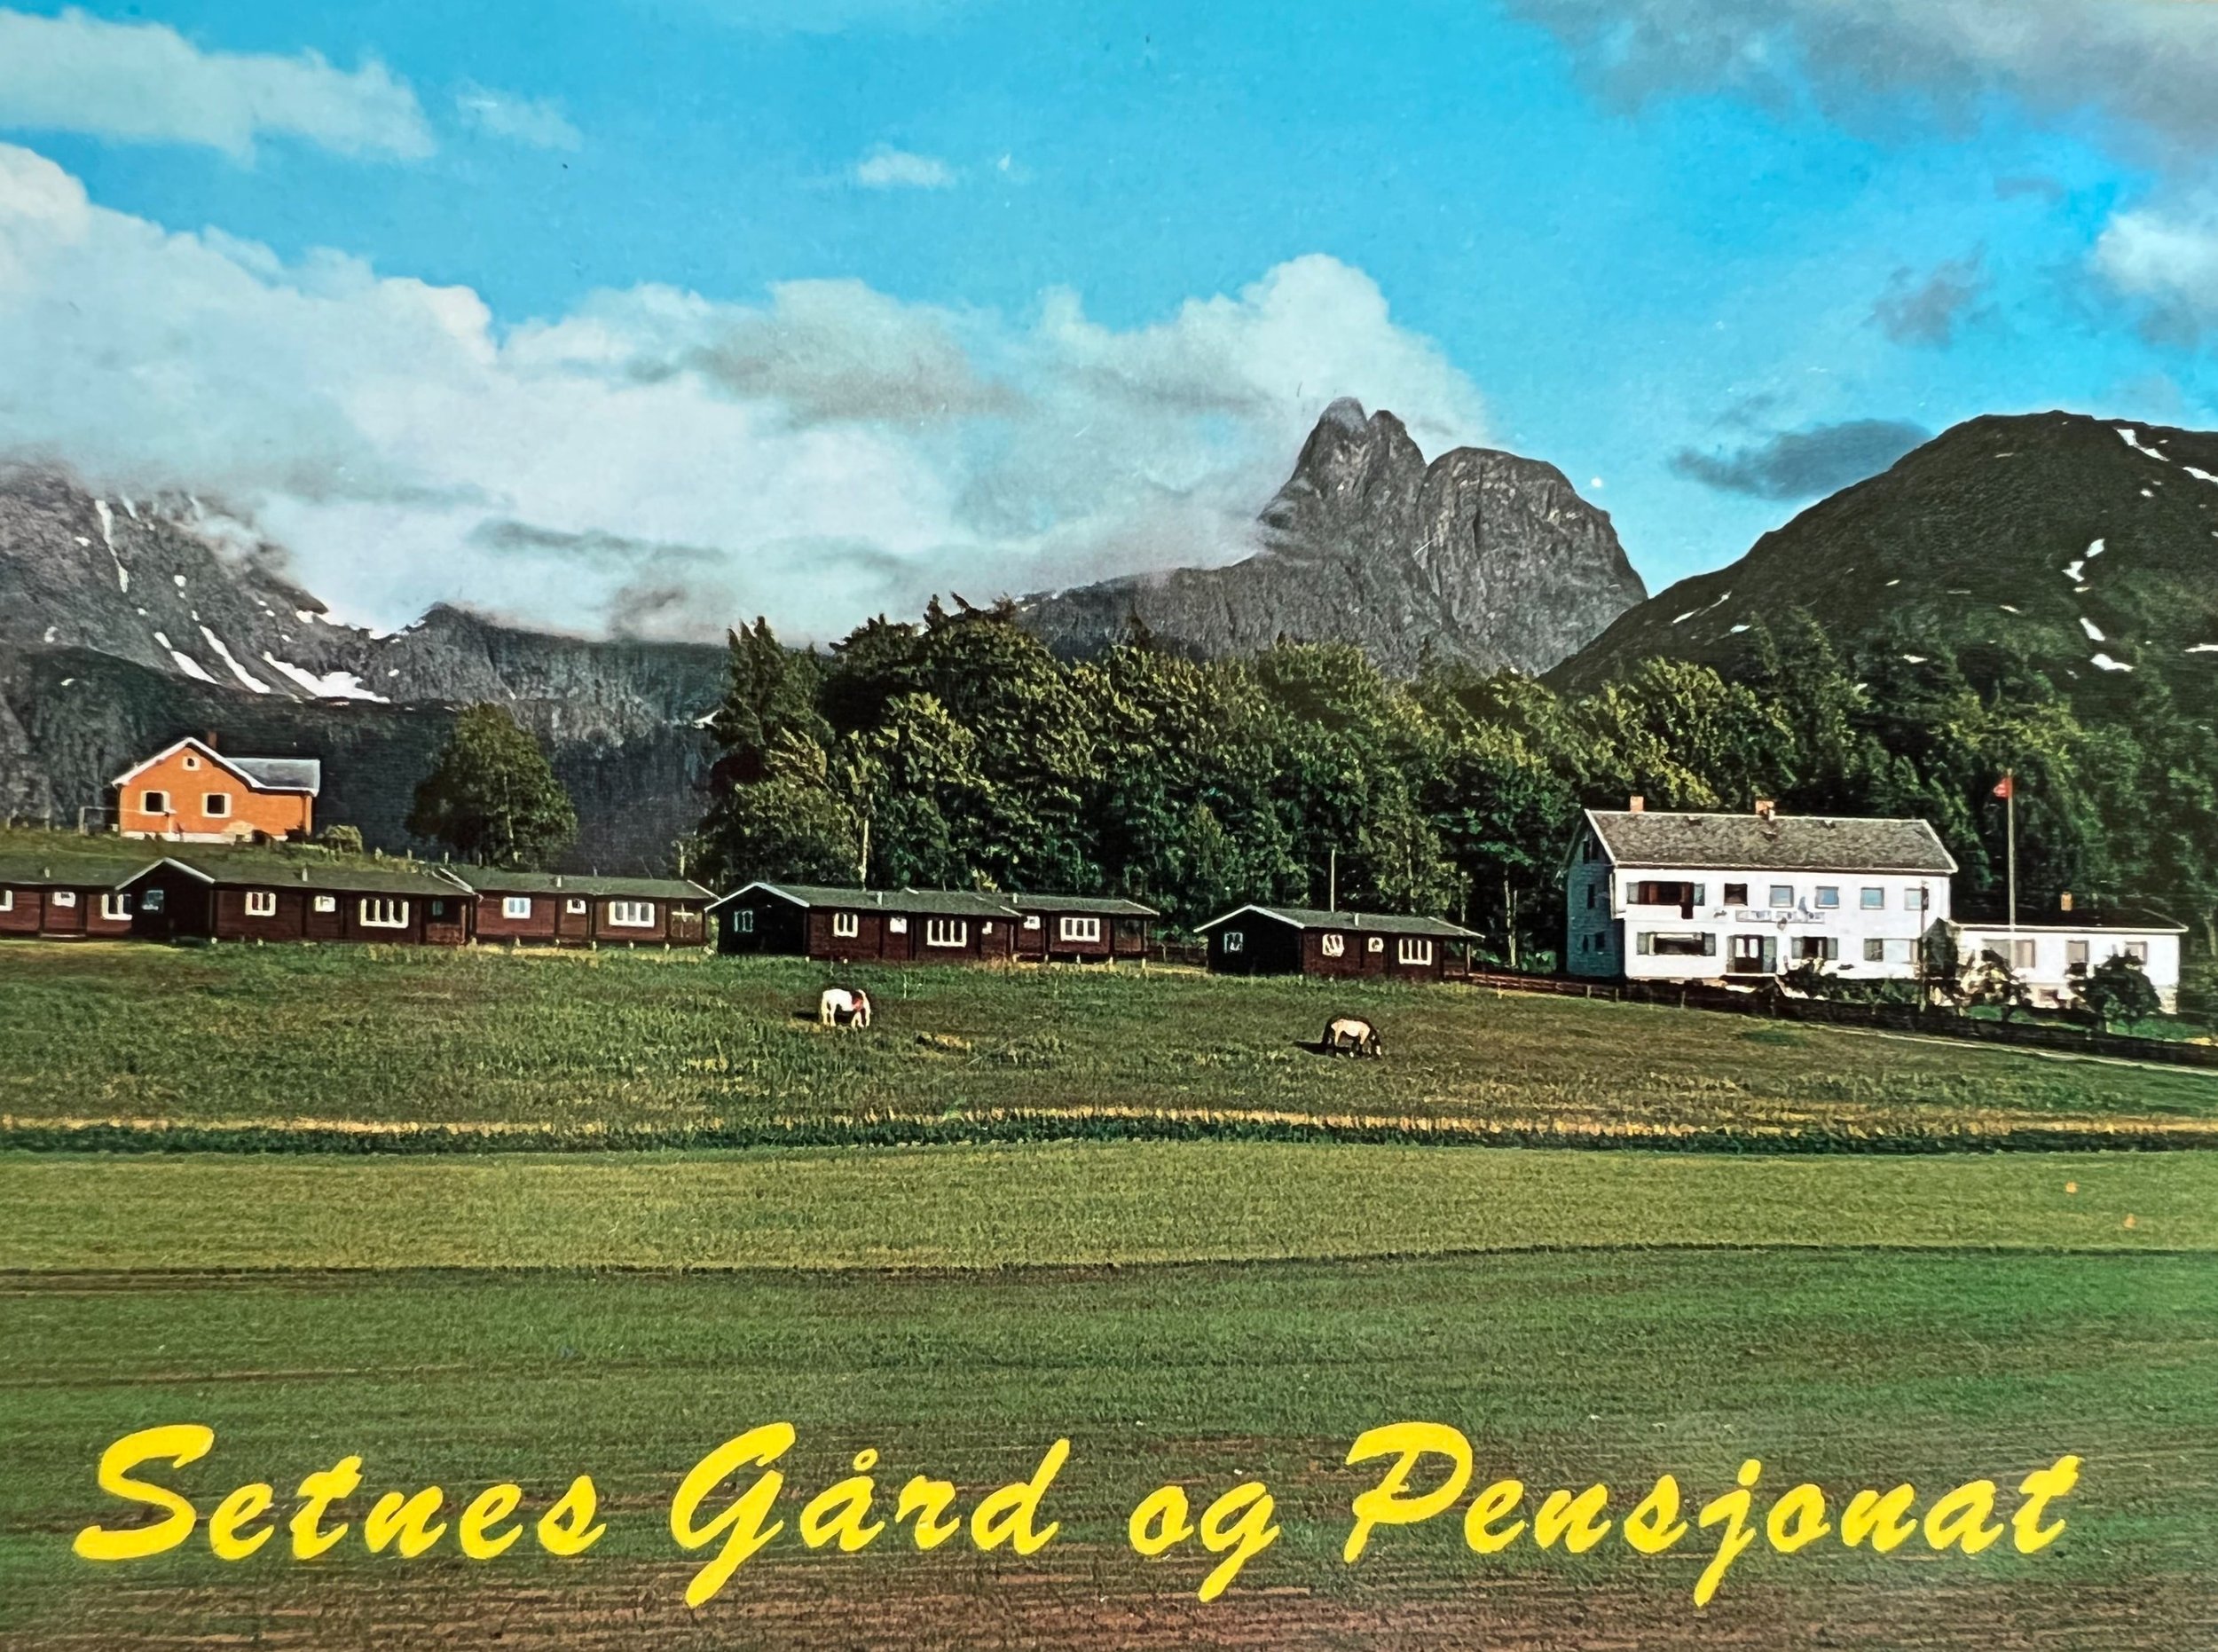 Postkort etter oppføring av hyttene og kårbolig.